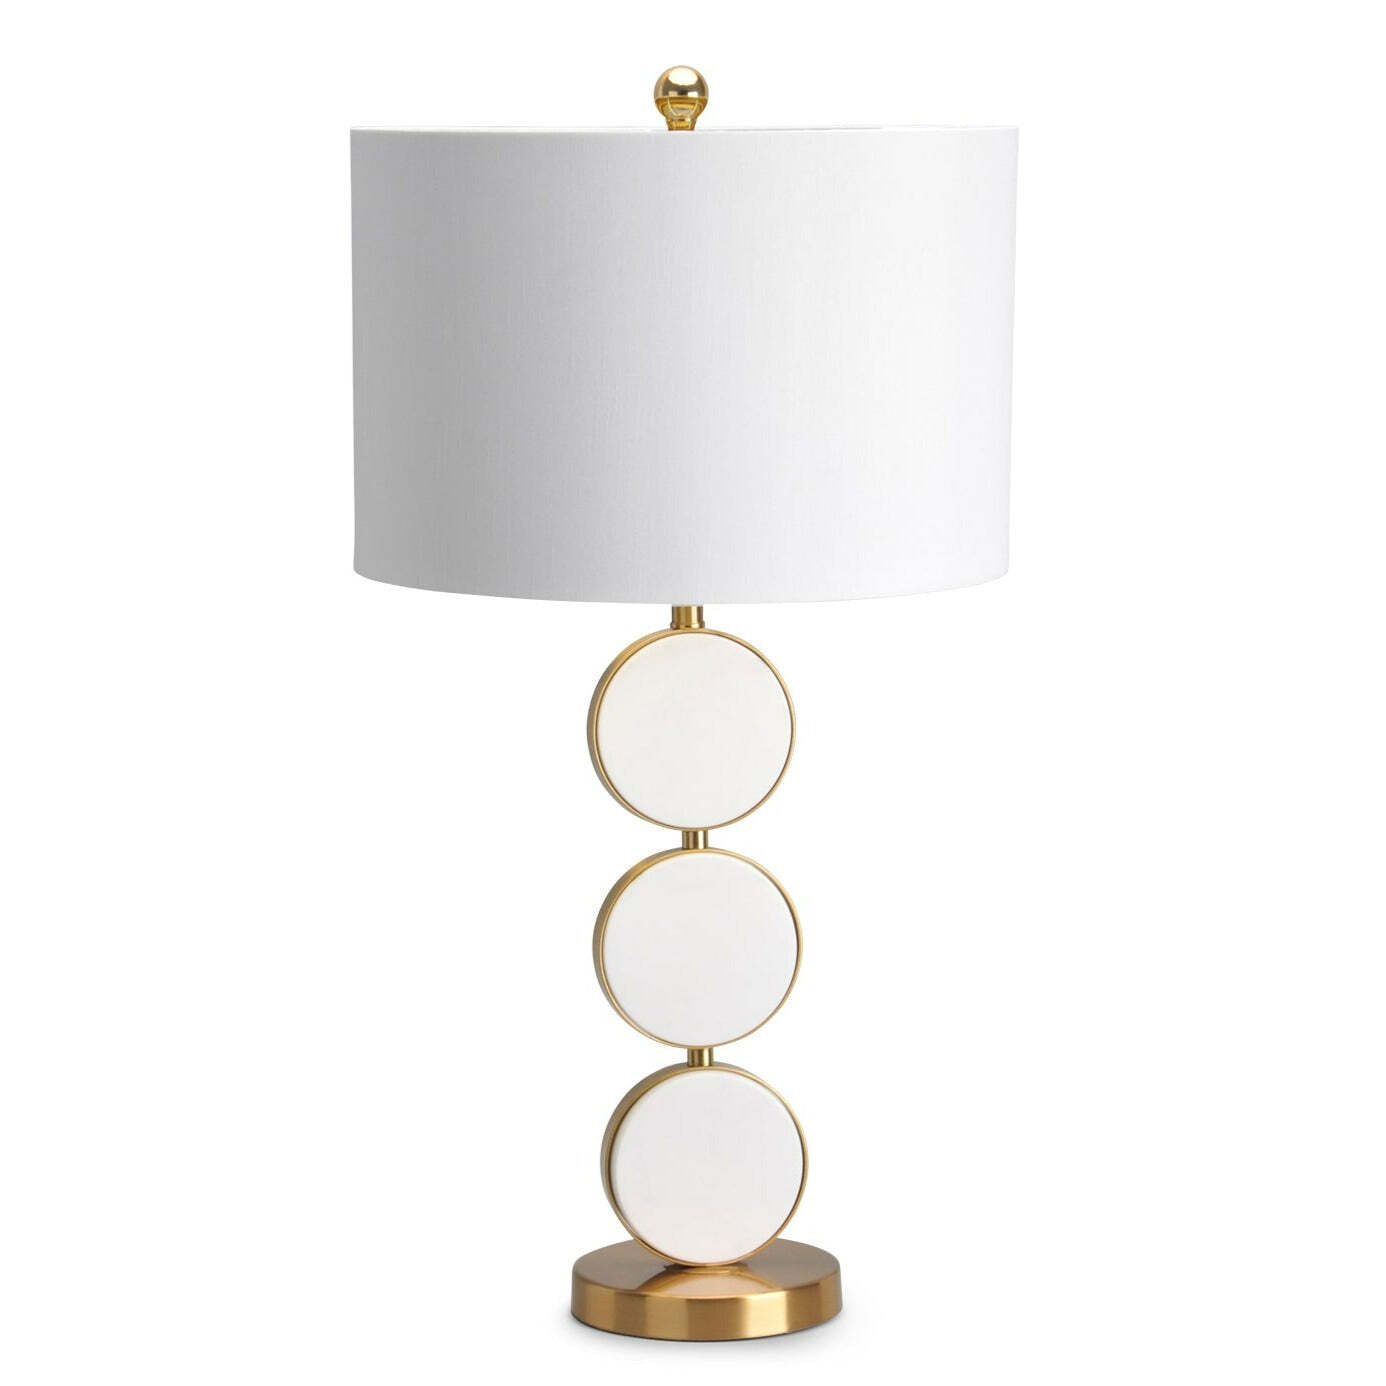 Berkeley Designs Olinda Table Lamp - image 1